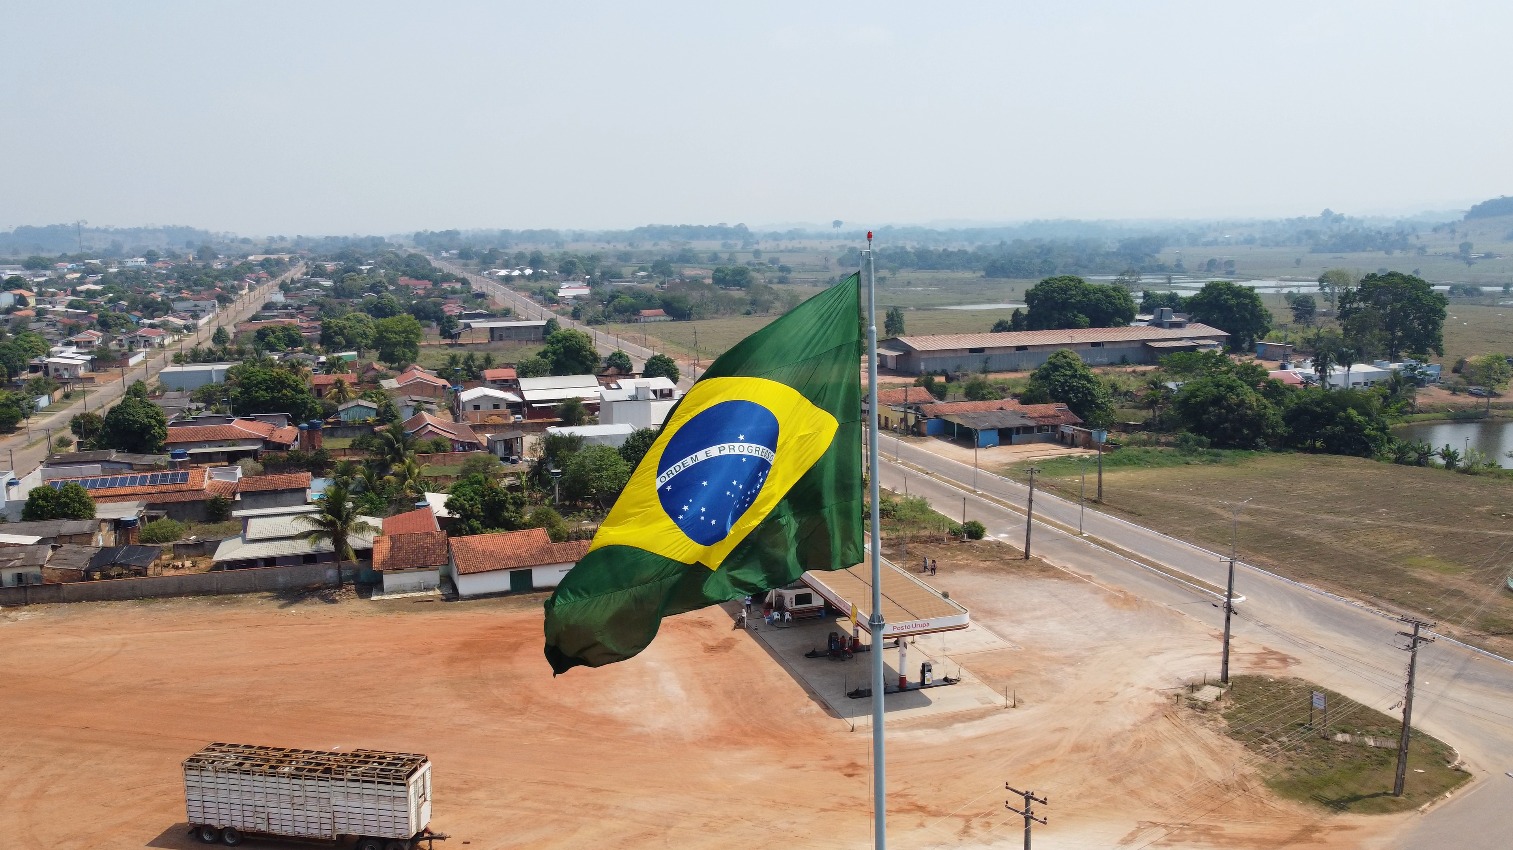 Inauguração do Mastro com Bandeira do Brasil em Urupá